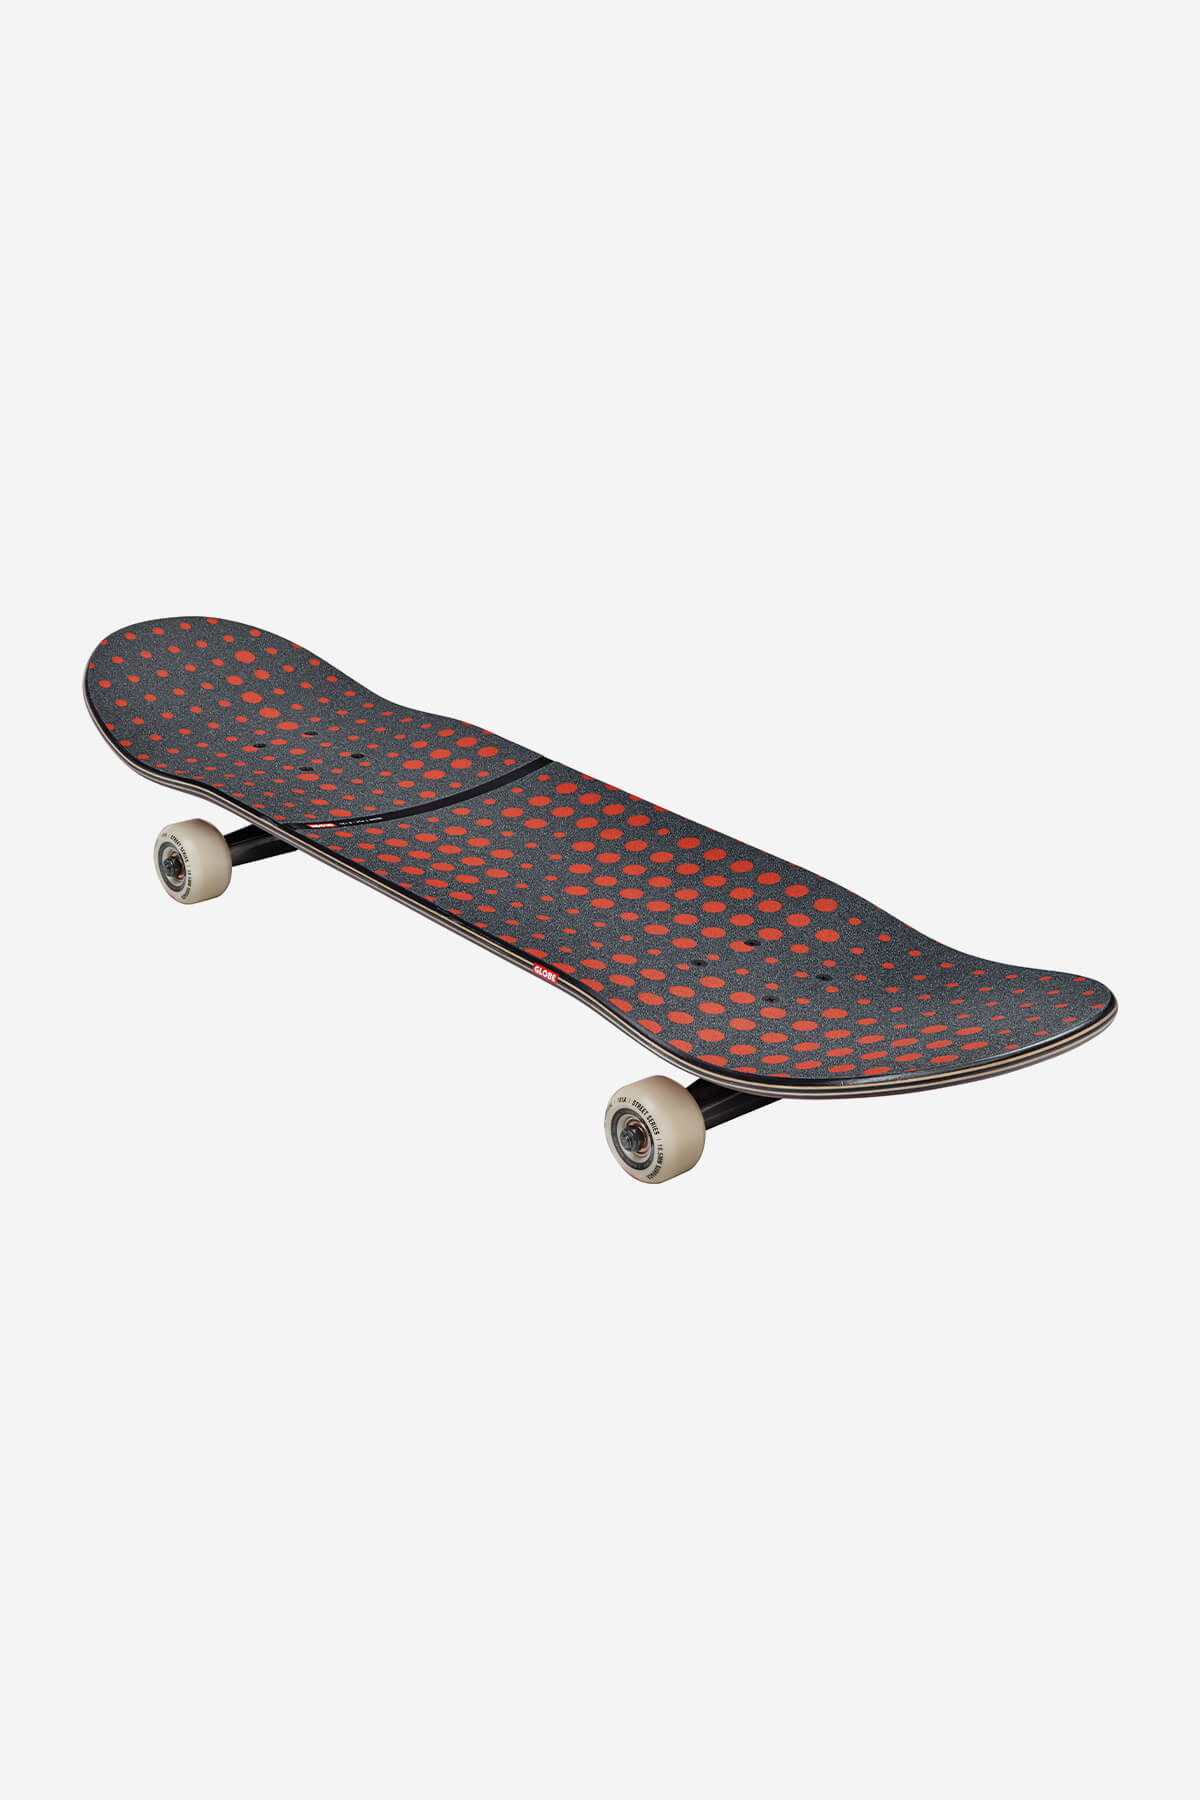 g2 dot gain rose 8.125" complete skateboard